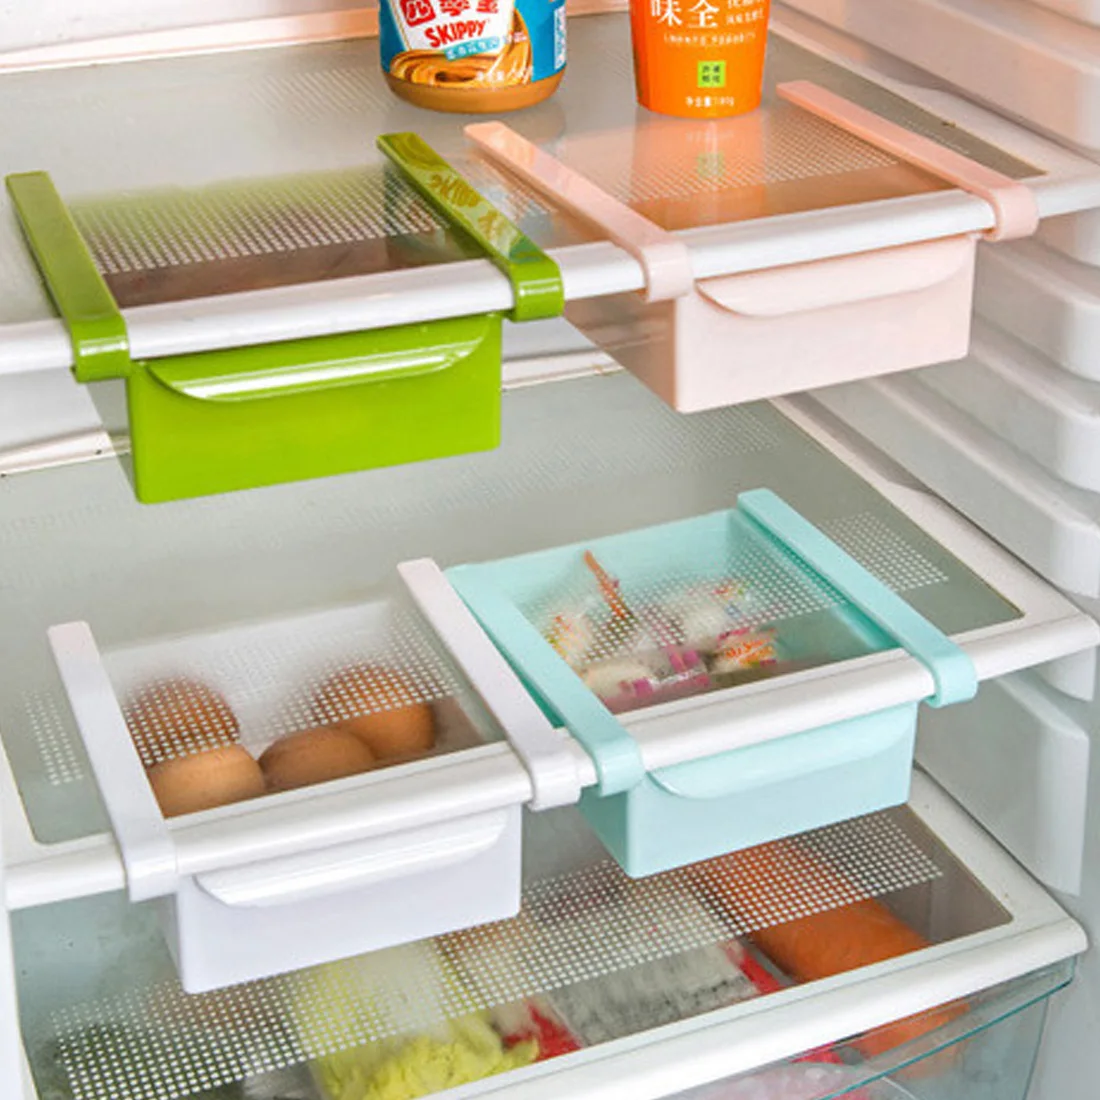 Кухня Холодильник ящики для хранения слайд Кухня Холодильник Морозильник пространство Saver стеллаж полка Holde ящик